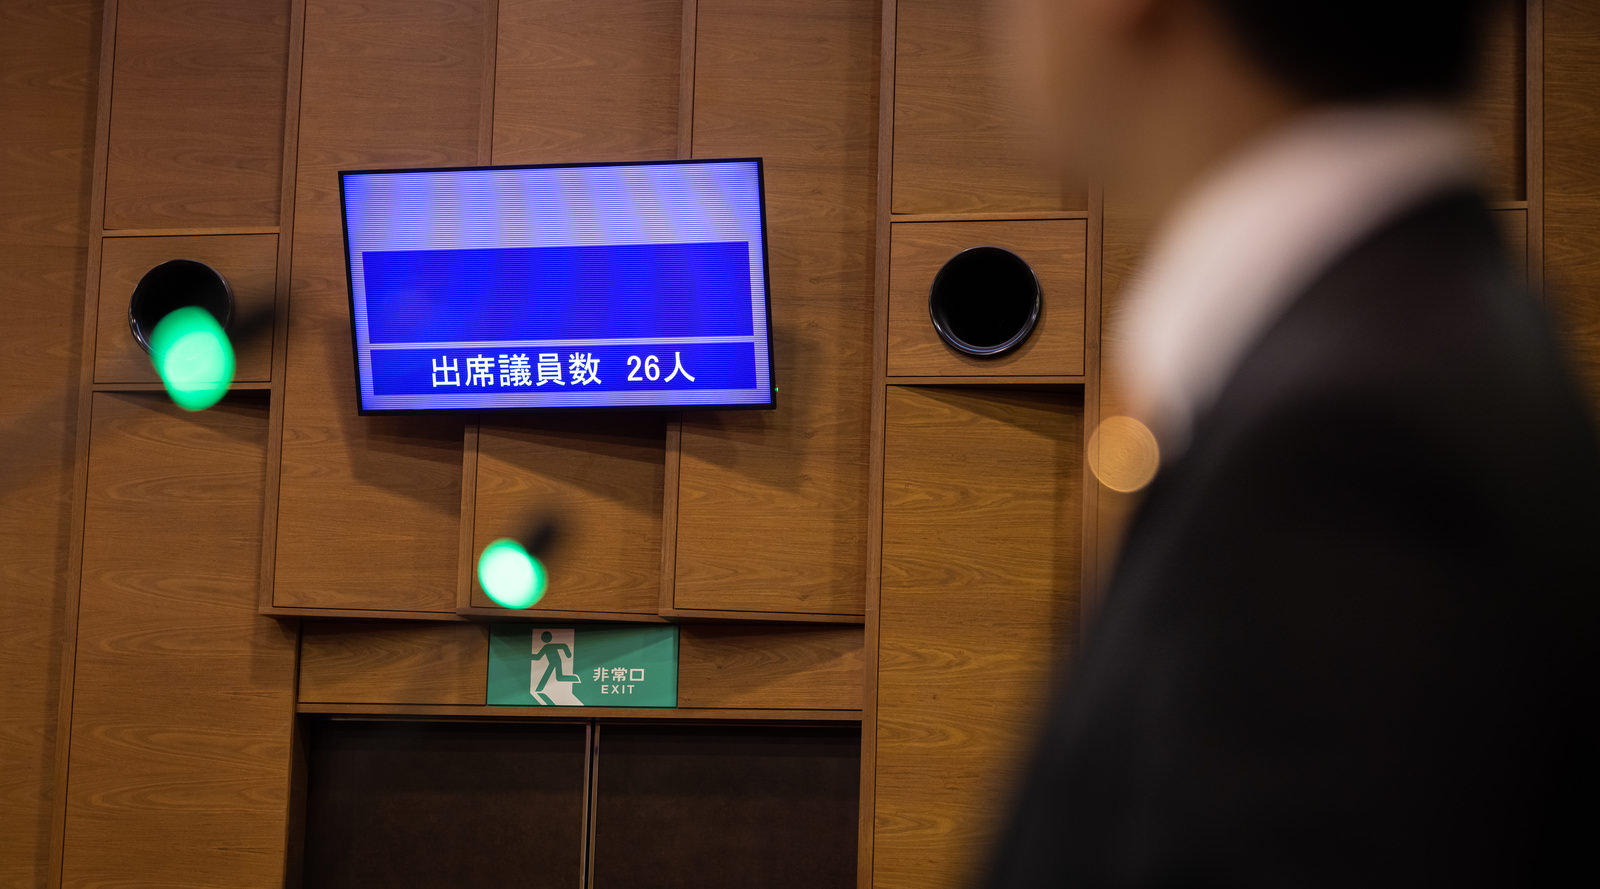 「ある日の津山市議会の出席議員数は26人 | フリー素材のぱくたそ」の写真